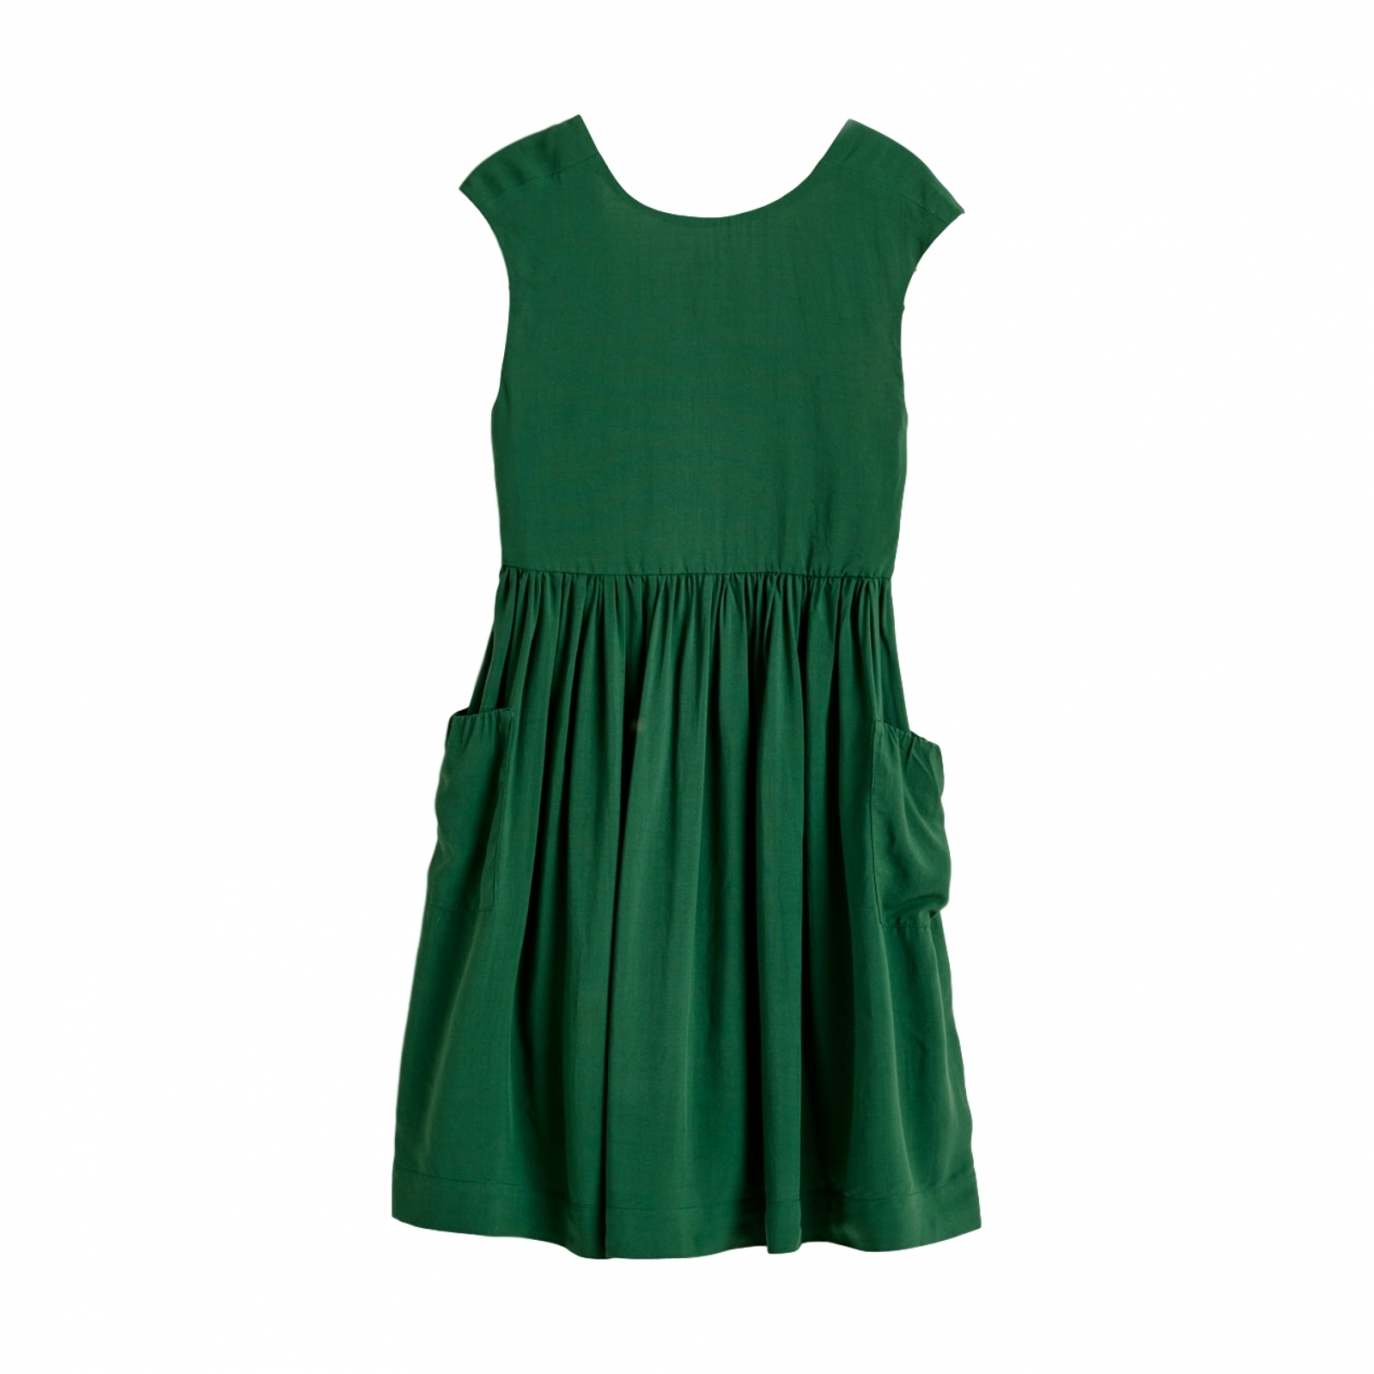 Bellerose - Sukienka Parasol zielona - Sukienki - BK201201 P1272 